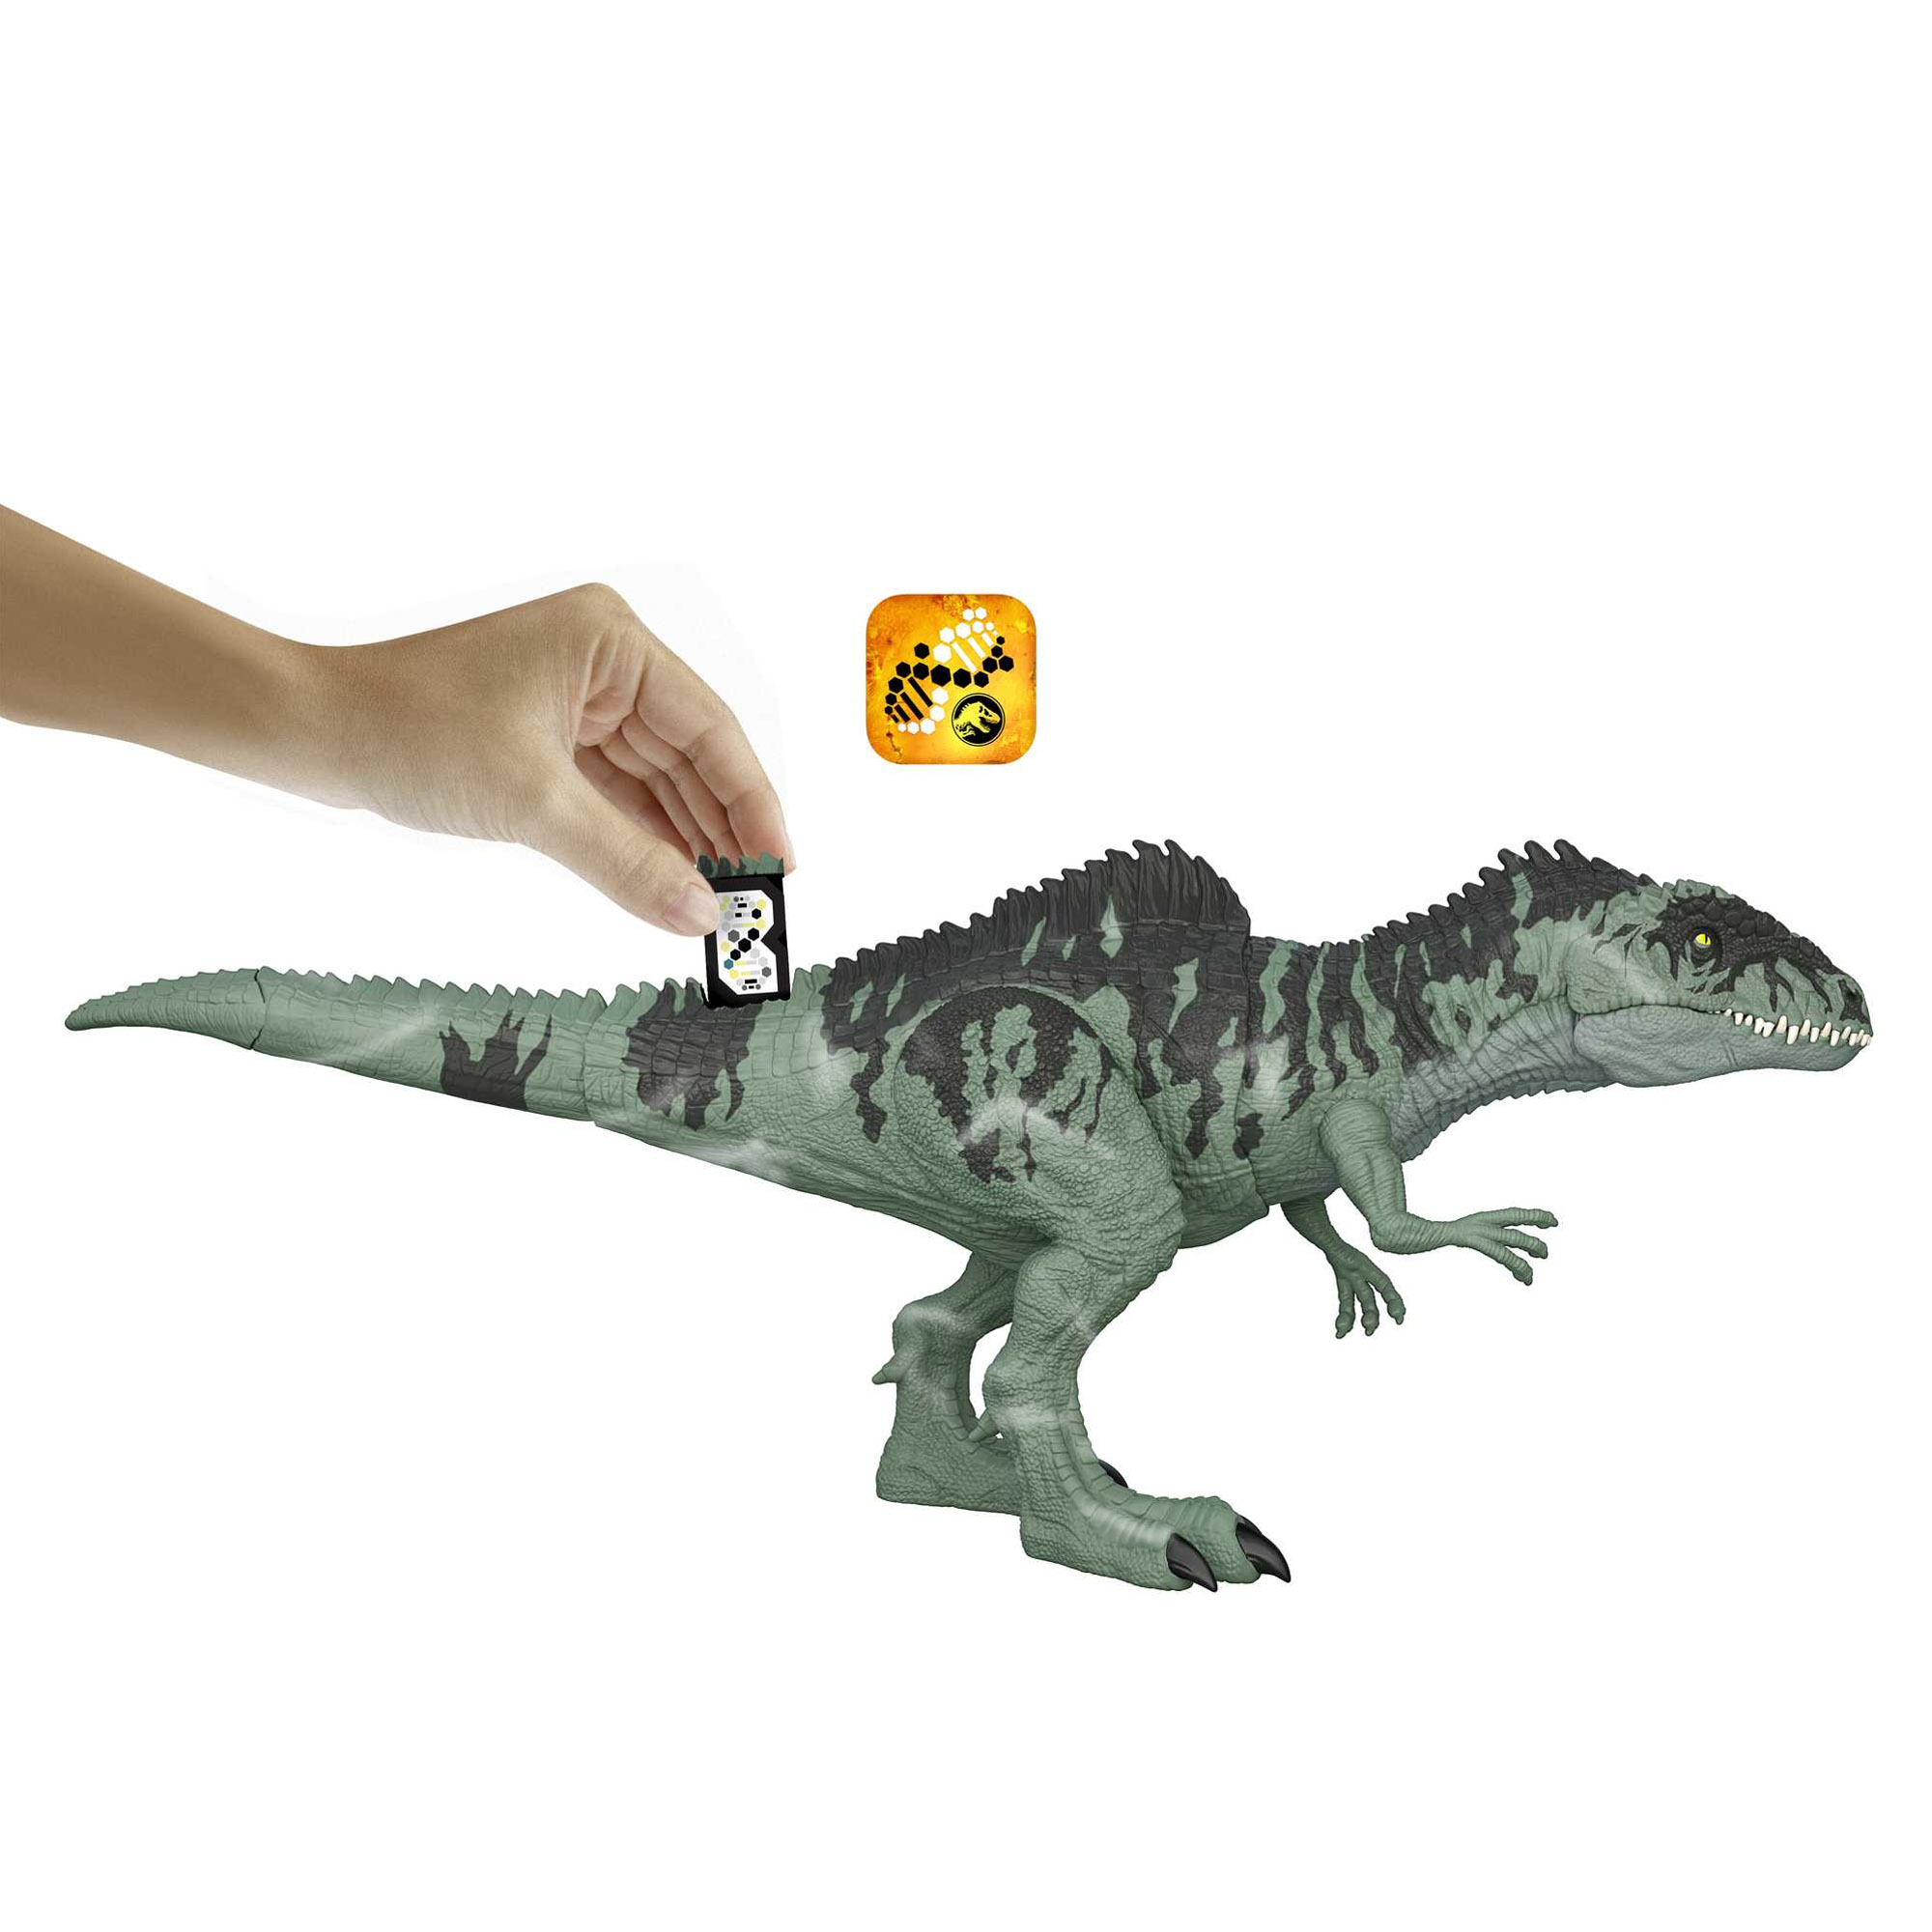 Giganotosauro Attacco Letale Con Fauci Mobili, Ruggito E Movimenti - Jurassic World